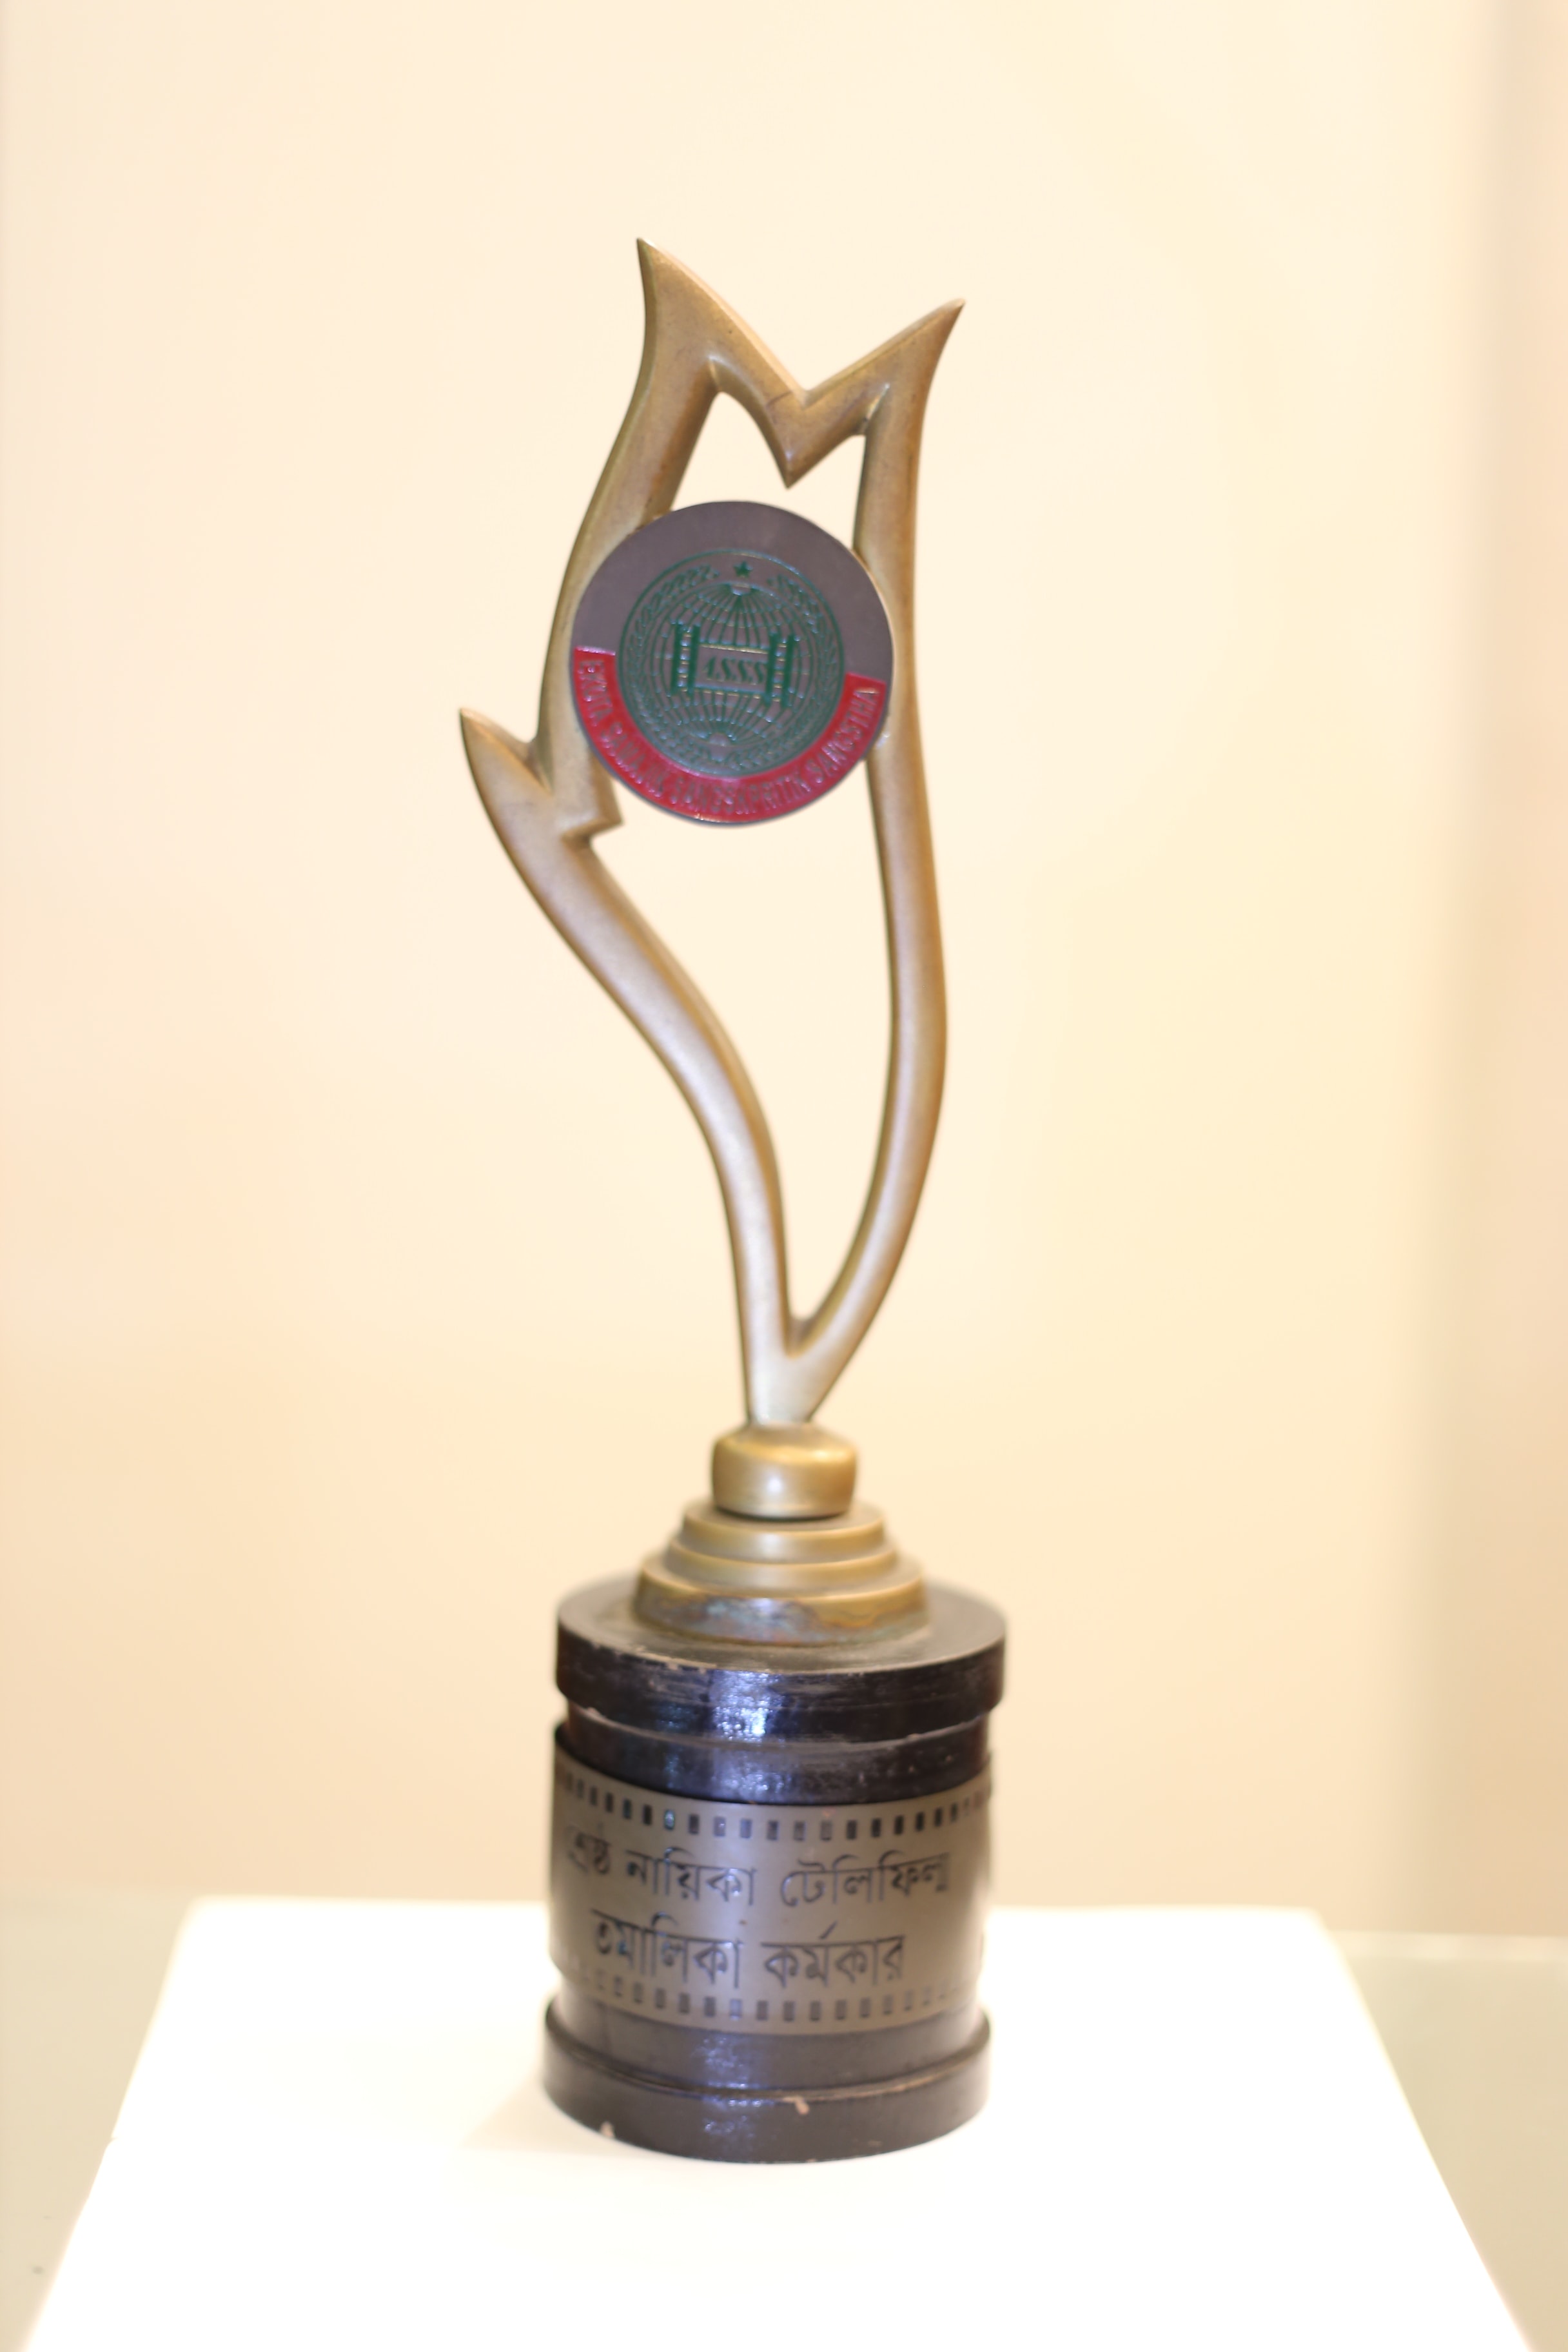 Awards – Tamalika Karmakar